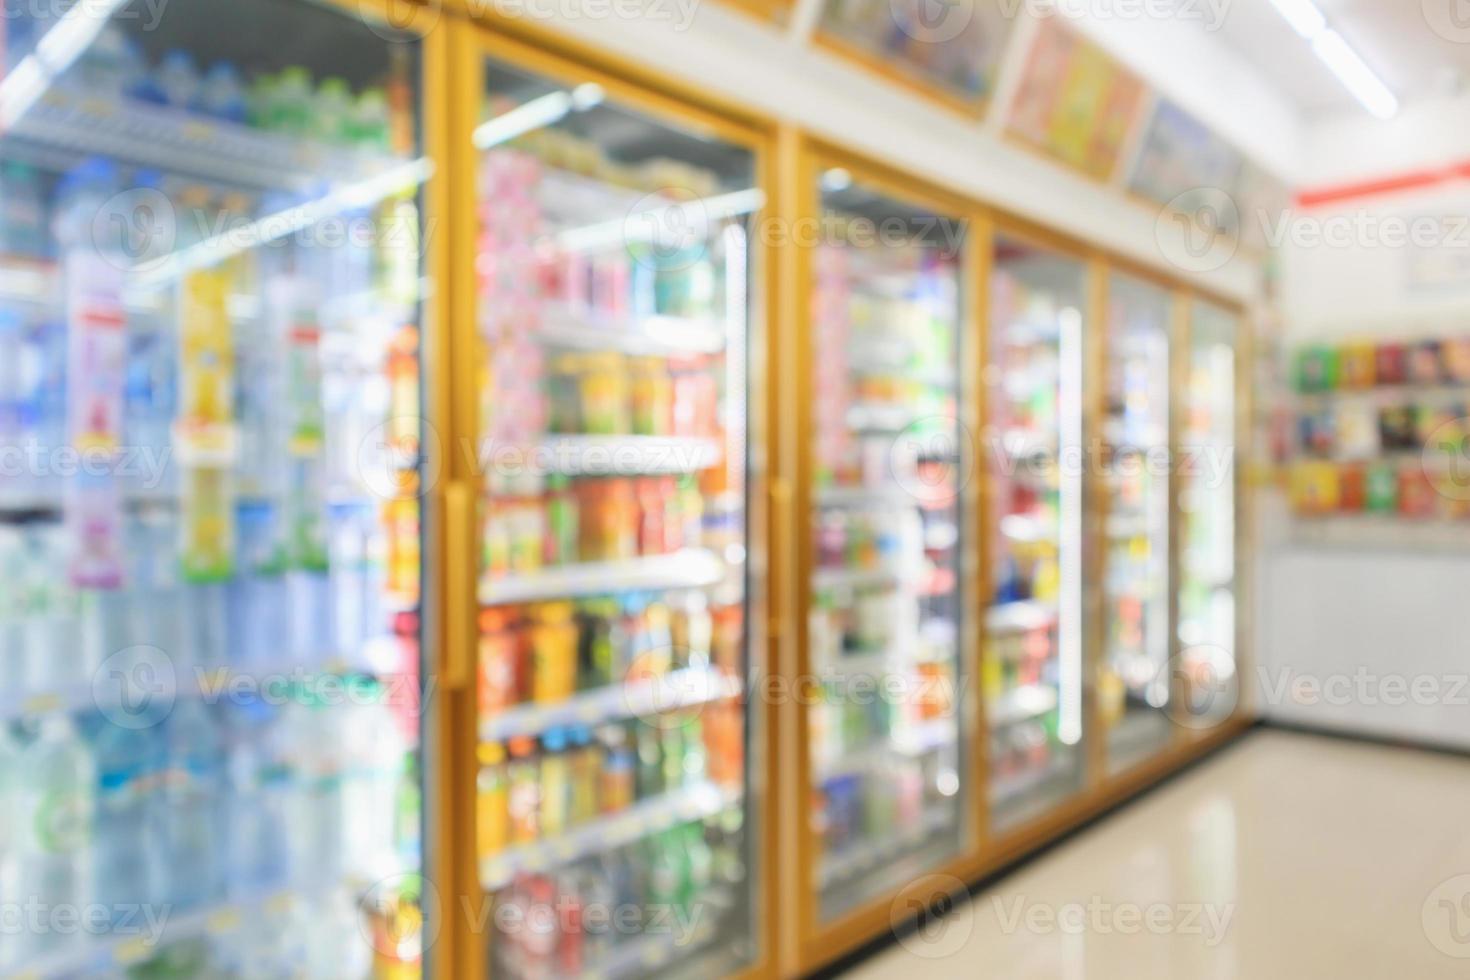 réfrigérateurs de dépanneur de supermarché avec des bouteilles de boissons gazeuses sur des étagères arrière-plan flou abstrait photo